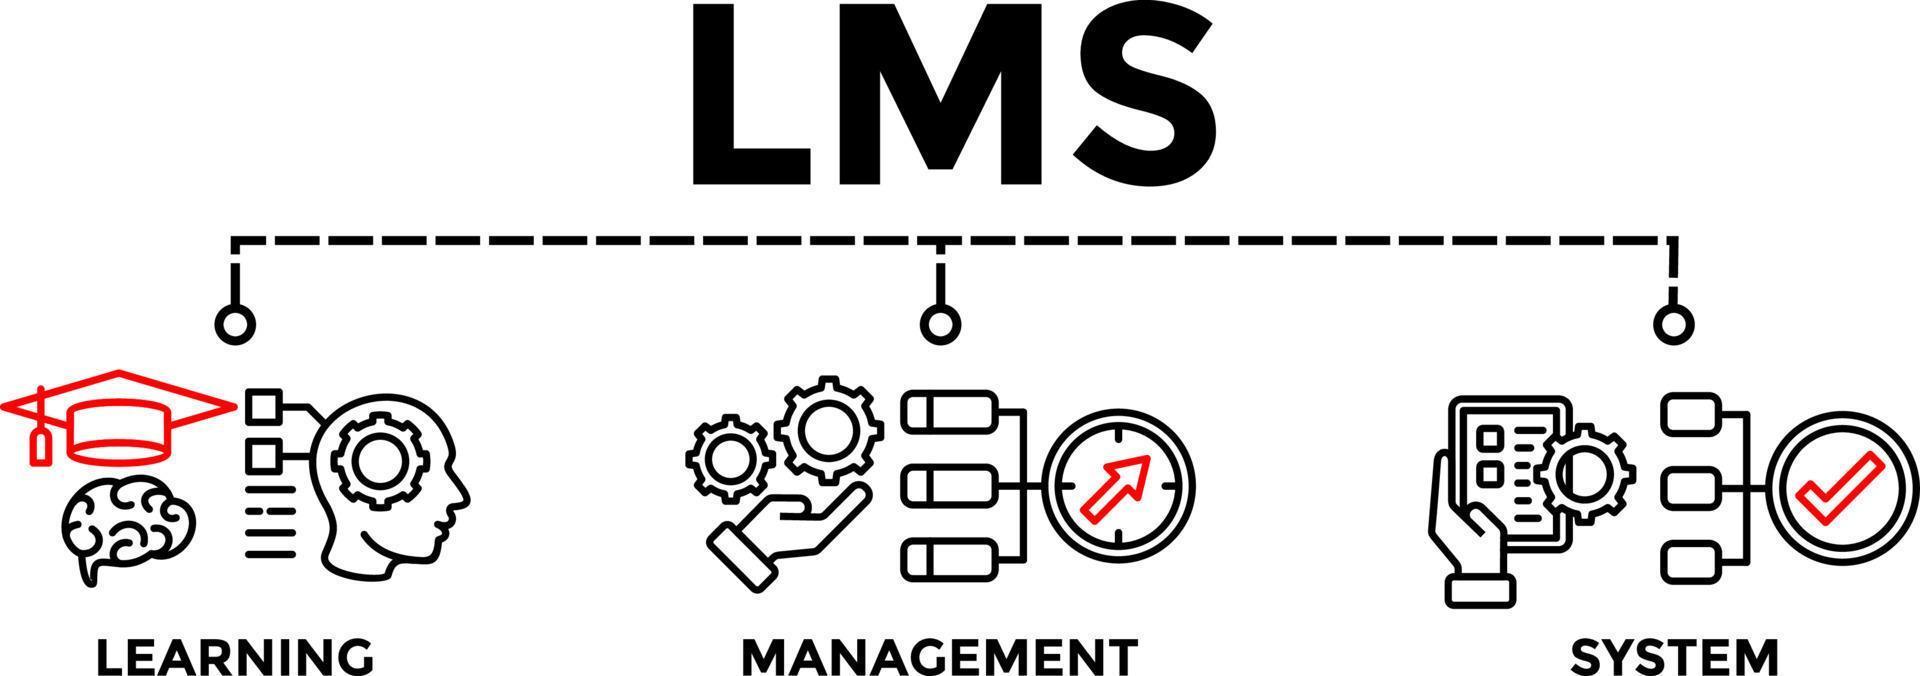 lms - sistema de gestión de aprendizaje. lms banner web vector ilustración concepto con iconos.